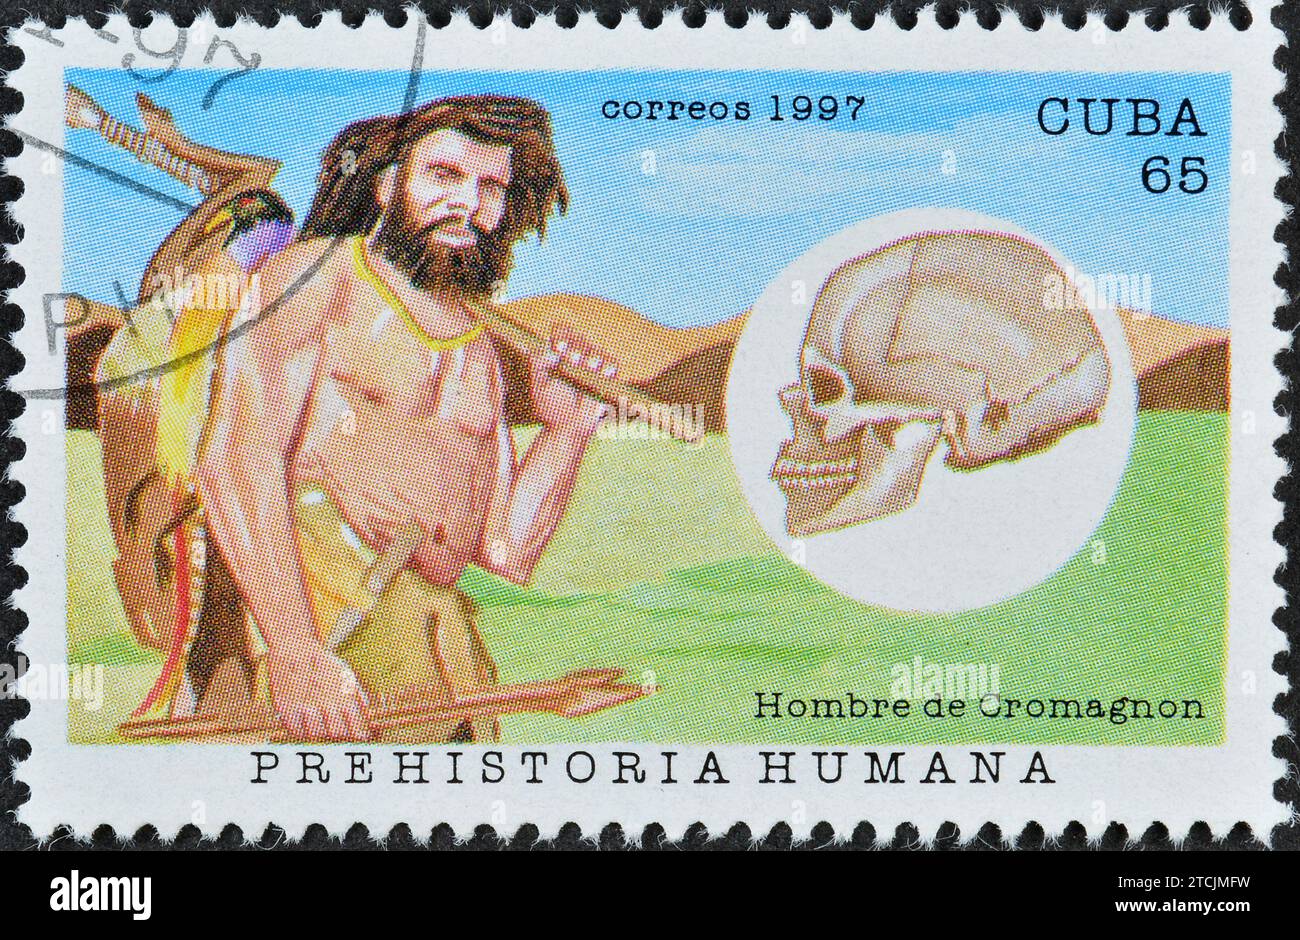 Gestempelte Briefmarke von Kuba, die Homosapiens sapiens - Cro-Magnon-Typus, Hominiden, um 1997 zeigt. Stockfoto